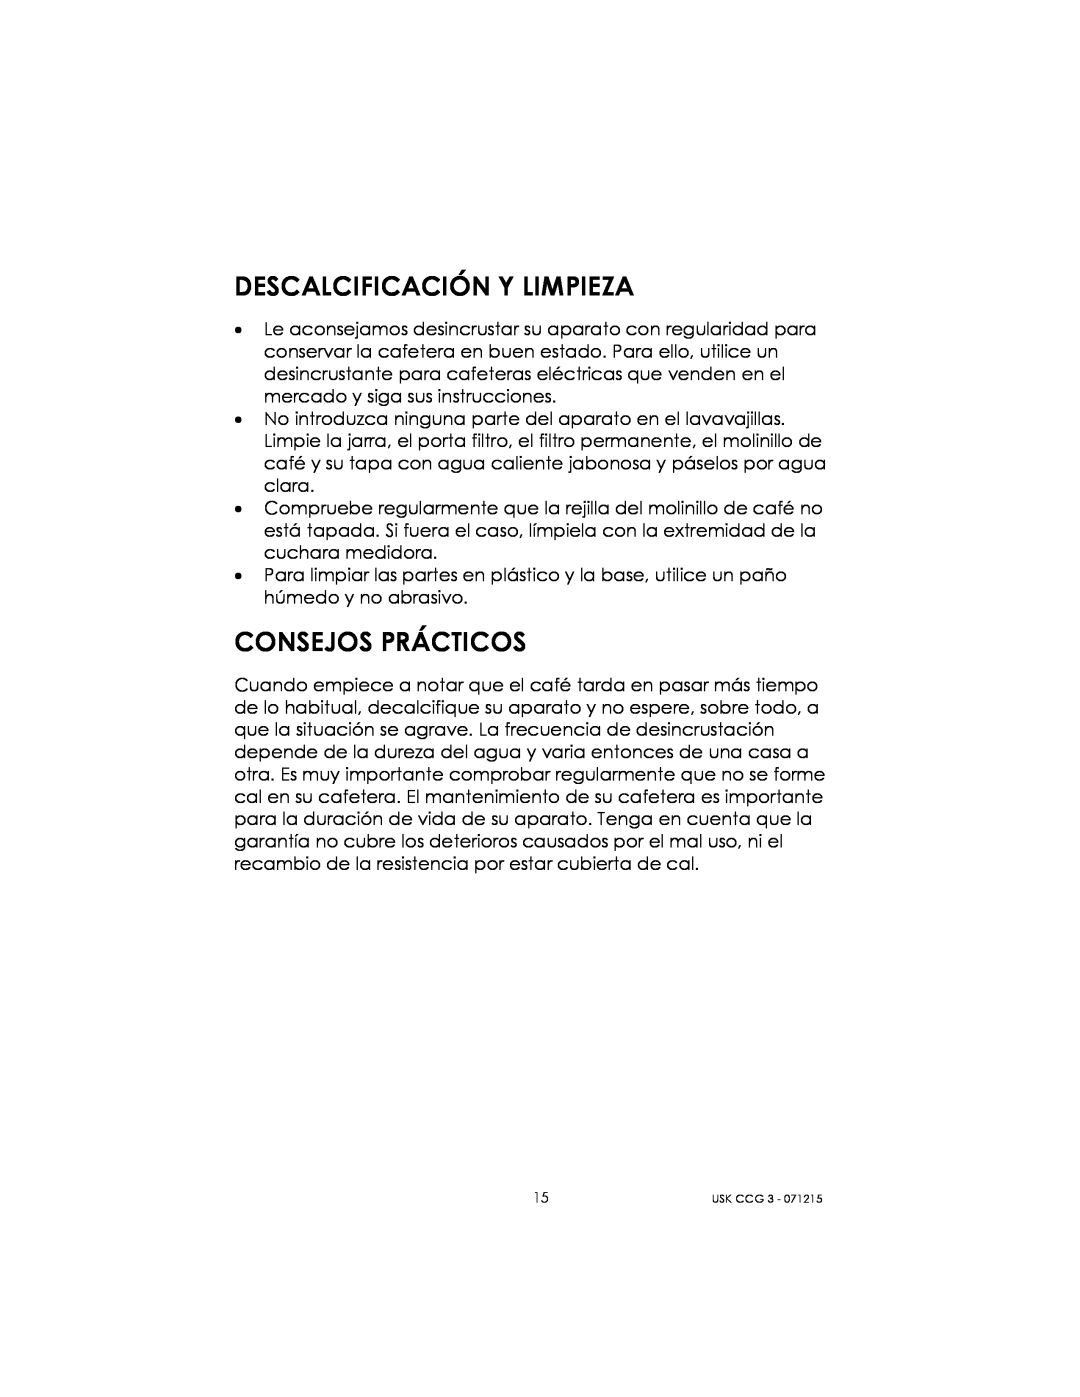 Kalorik USK CCG 3 manual Descalcificación Y Limpieza, Consejos Prácticos 